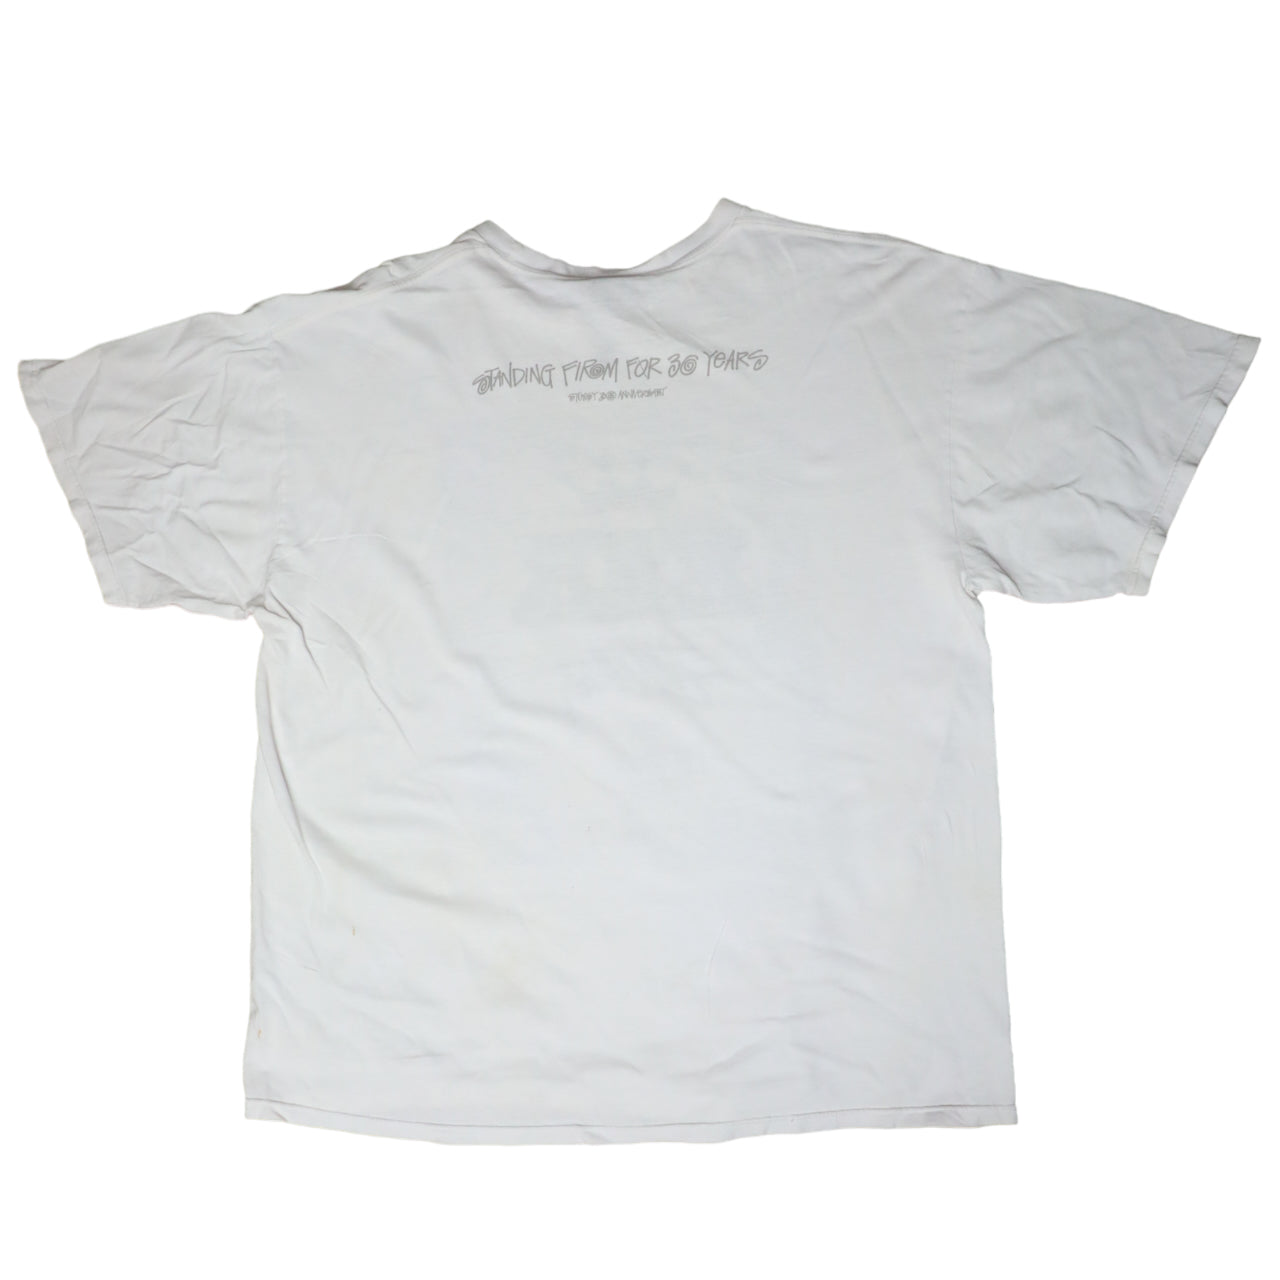 Stussy Men's Short Sleeve logo tshirt white